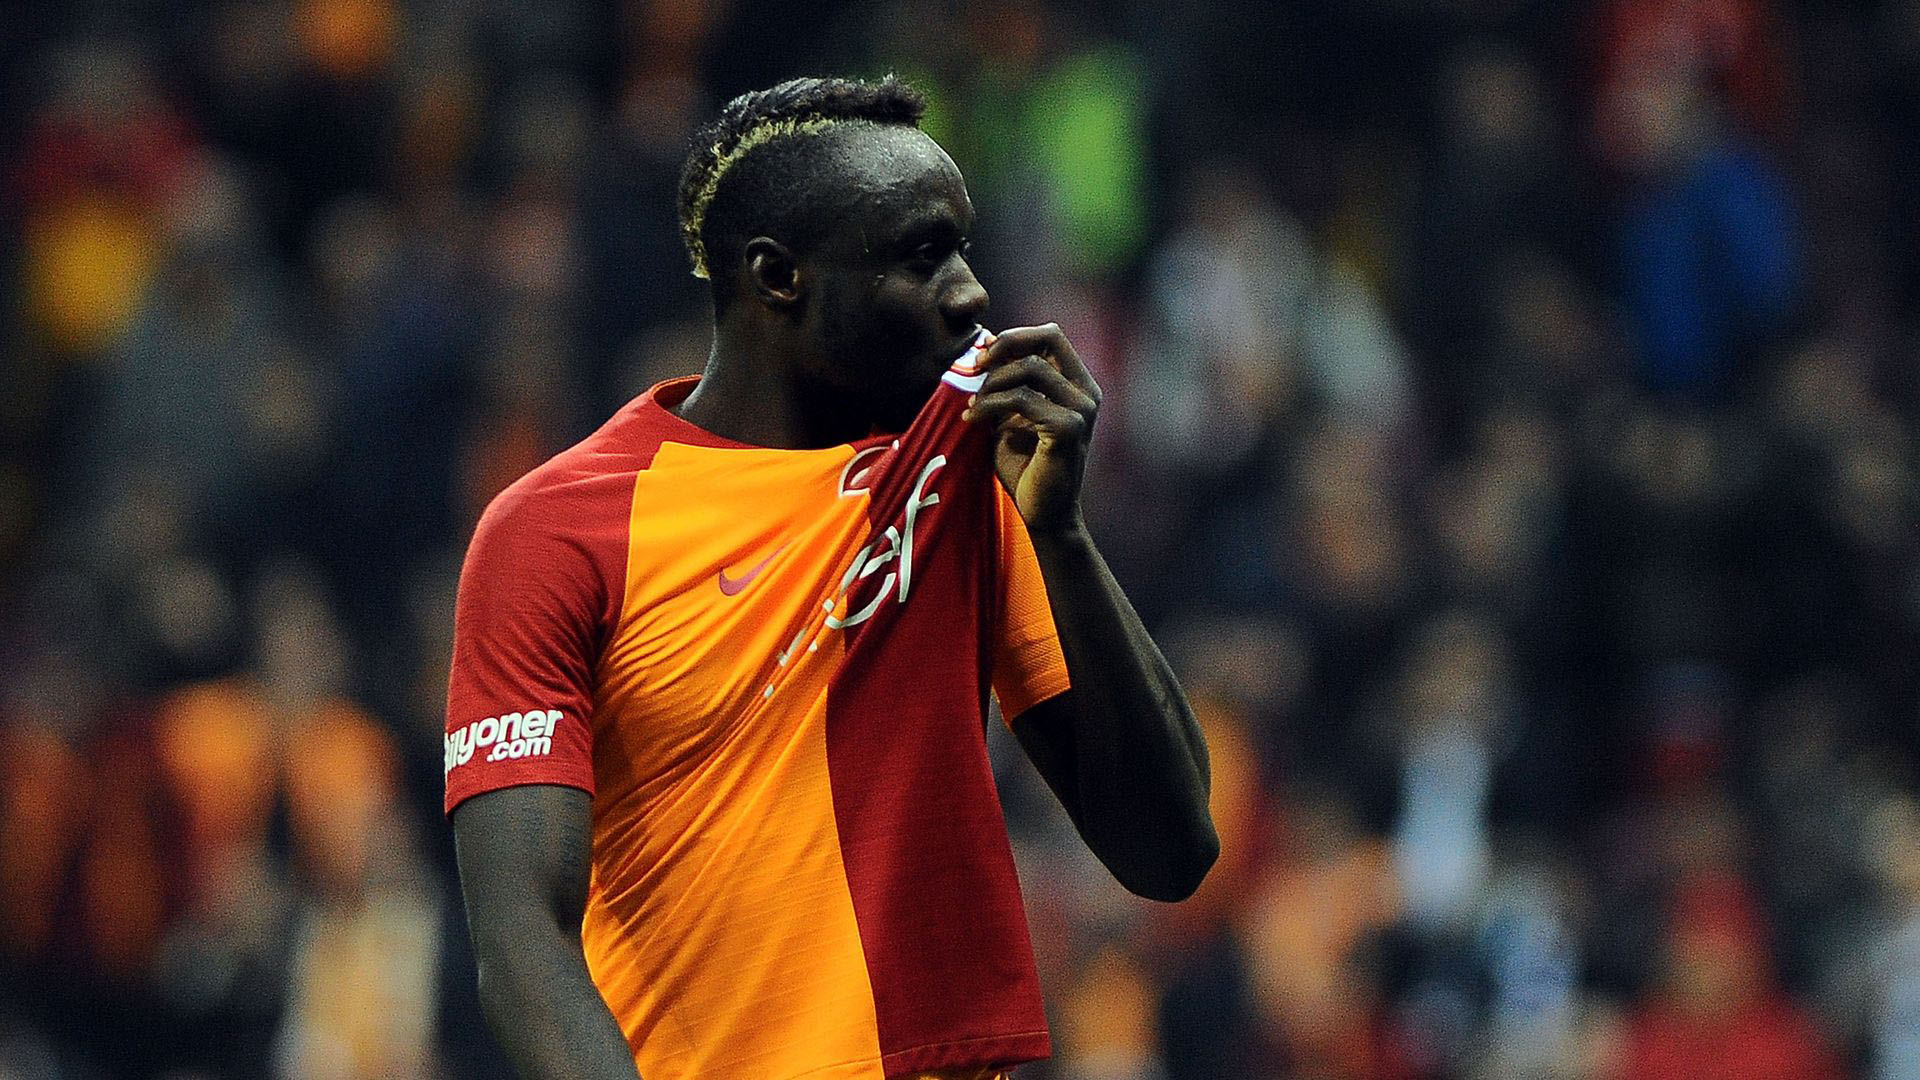 Son dakika! Galatasaray'da Diagne'nin sözleşmesi feshedildi!,